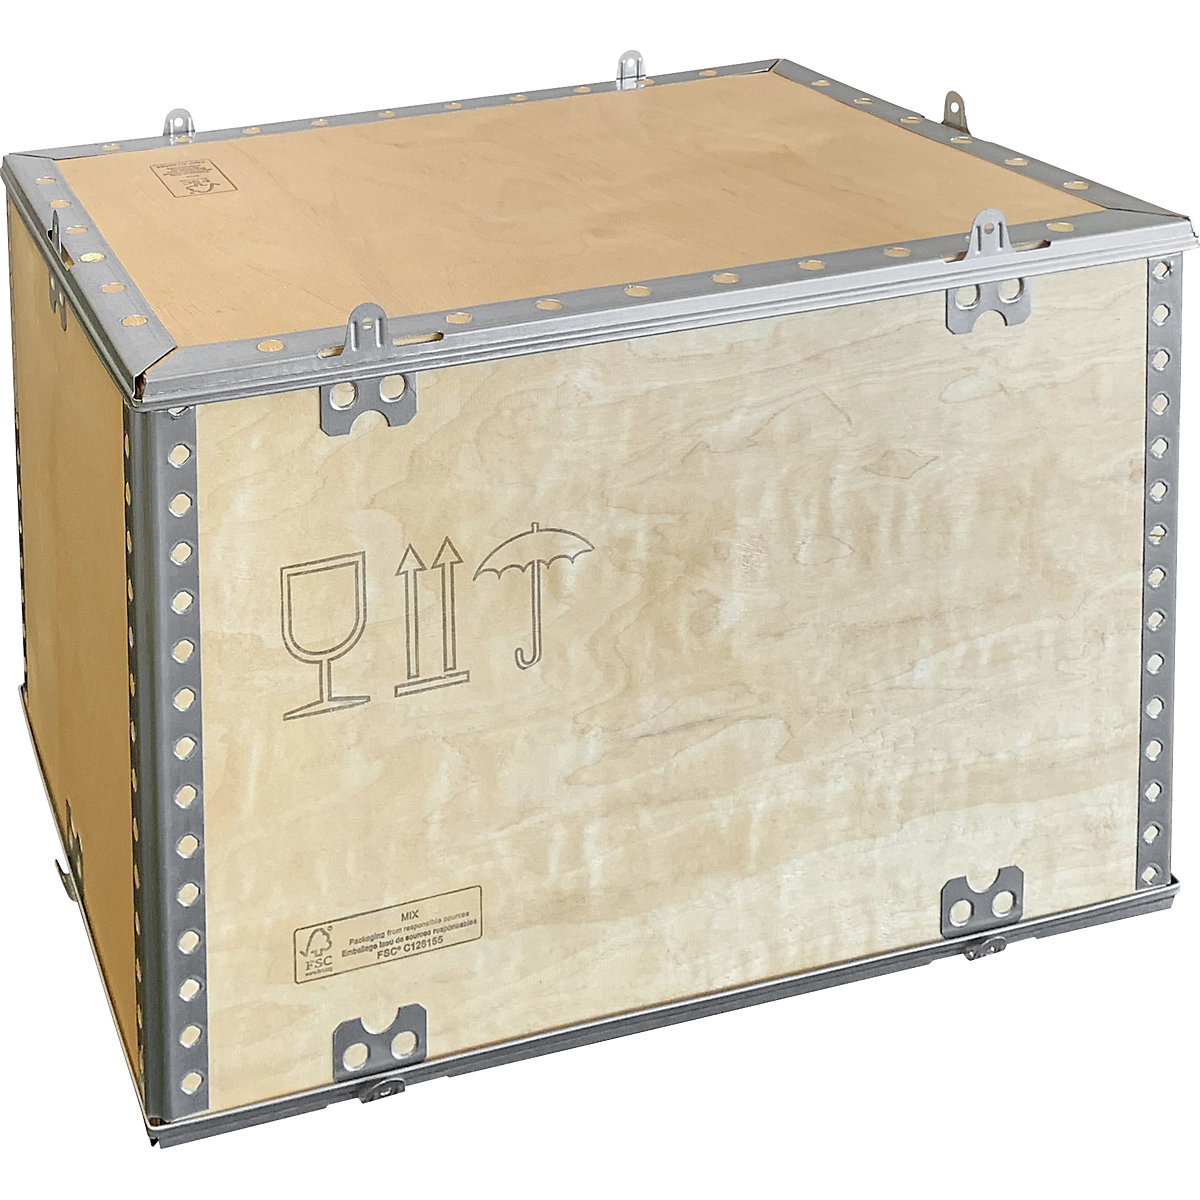 Caja plegable de madera, estándar, L x A x H 580 x 380 x 380 mm, a partir de 1 unid.-1